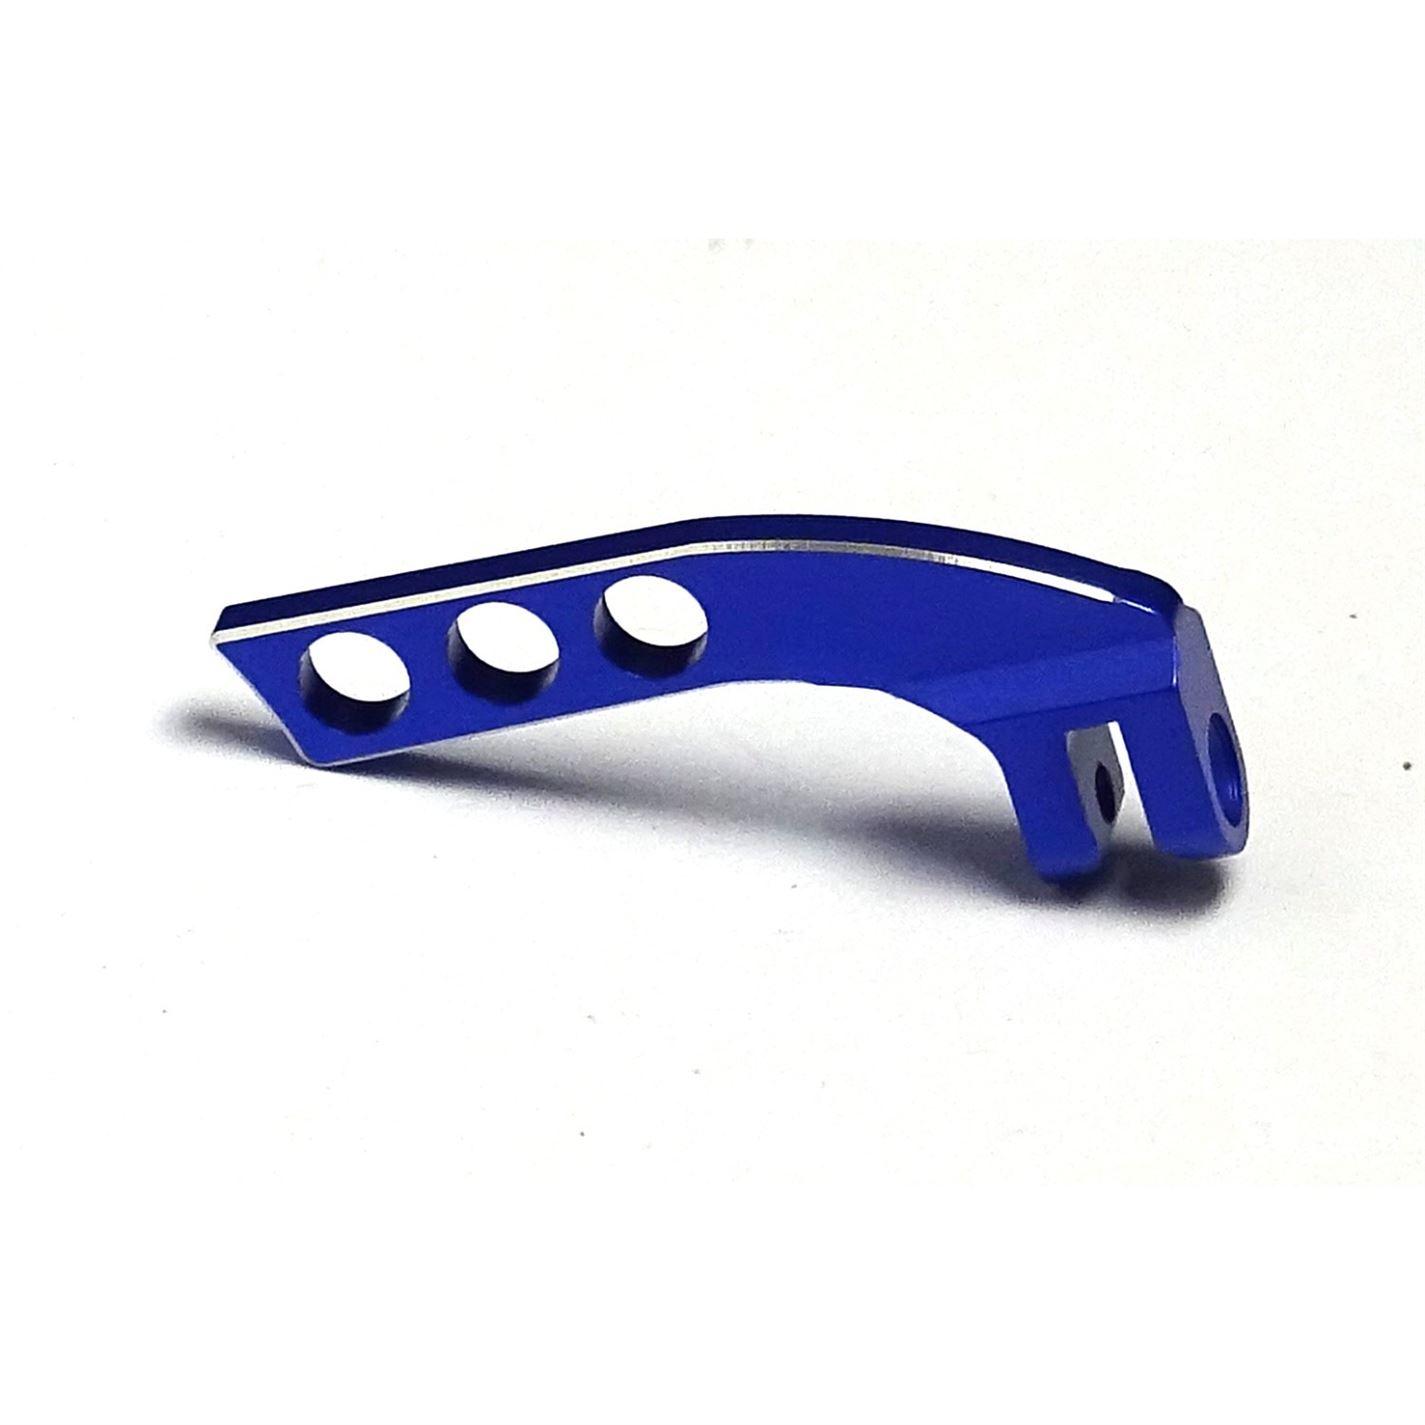 Blue Aluminum Alloy Horizontal Tansmitter Neck Strap Balancer - UK Seller